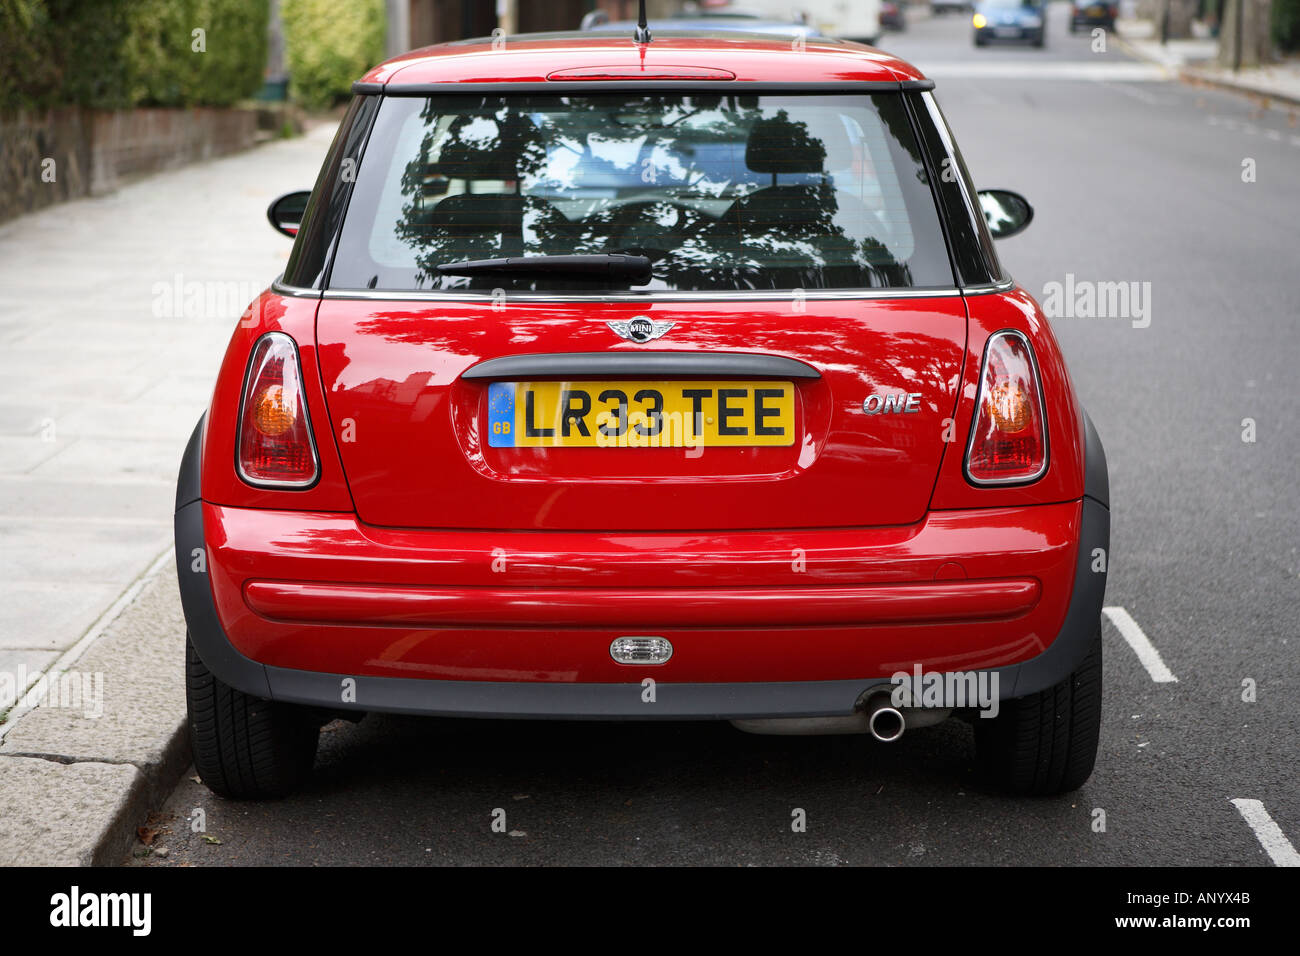 Mini rouge une voiture garée dans un parking bay dans une rue de Londres Angleterre Royaume-Uni Banque D'Images